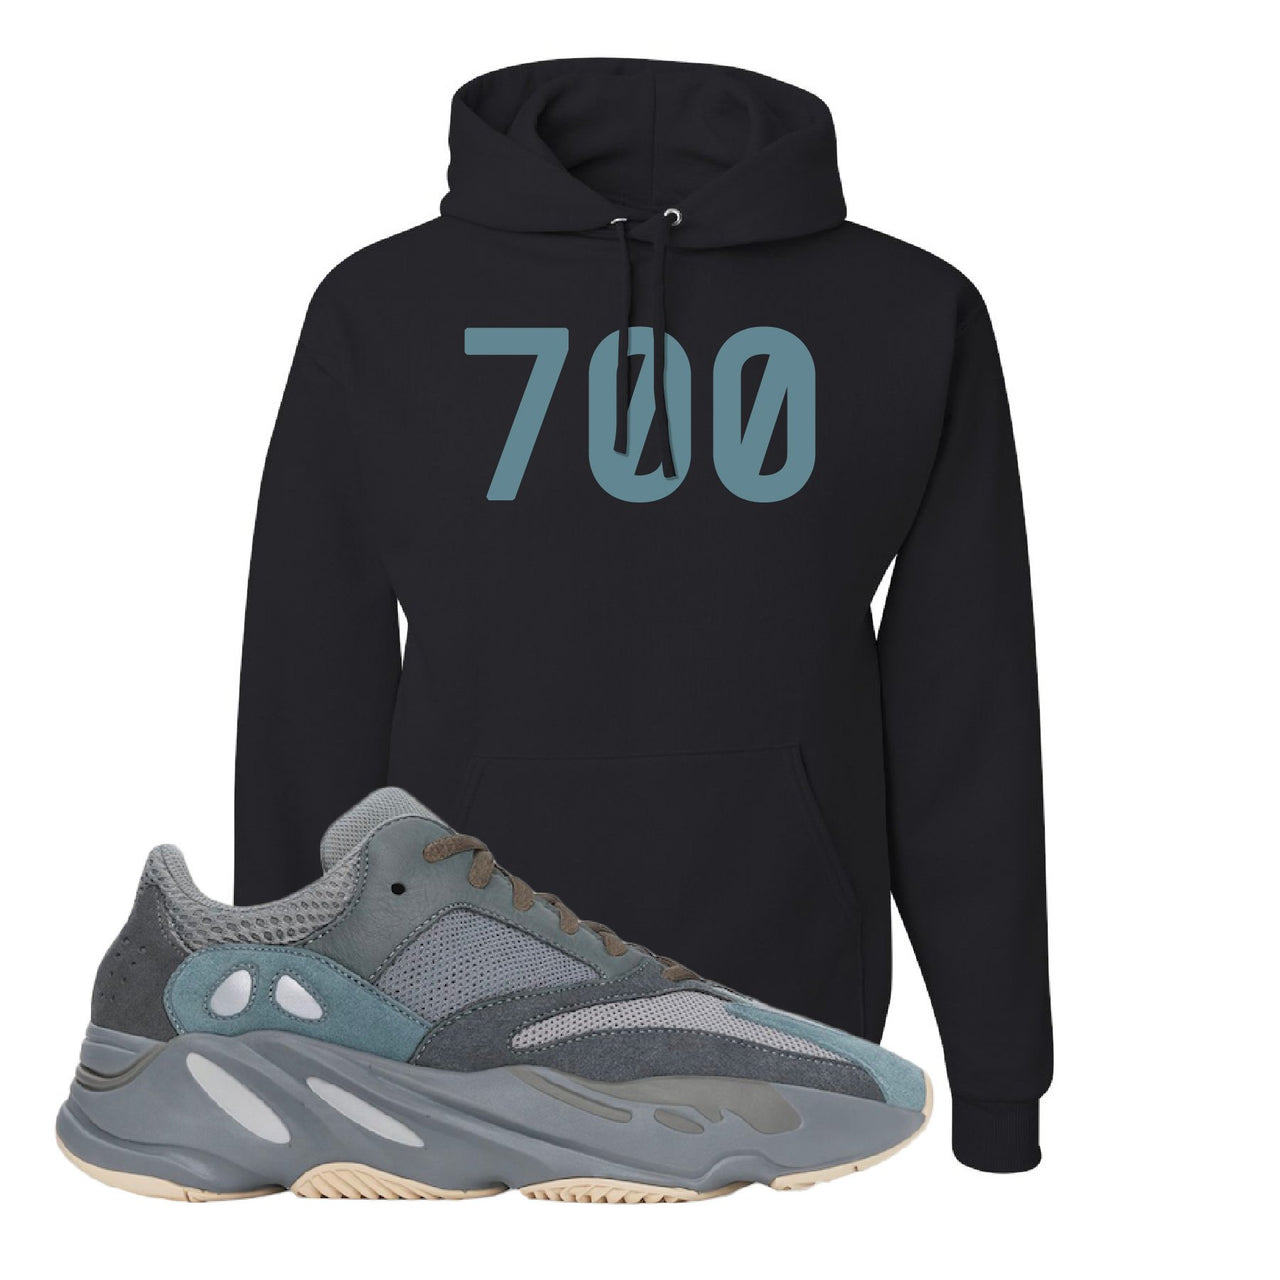 Yeezy Boost 700 Teal Blue 700 Black Sneaker Hook Up Pullover Hoodie